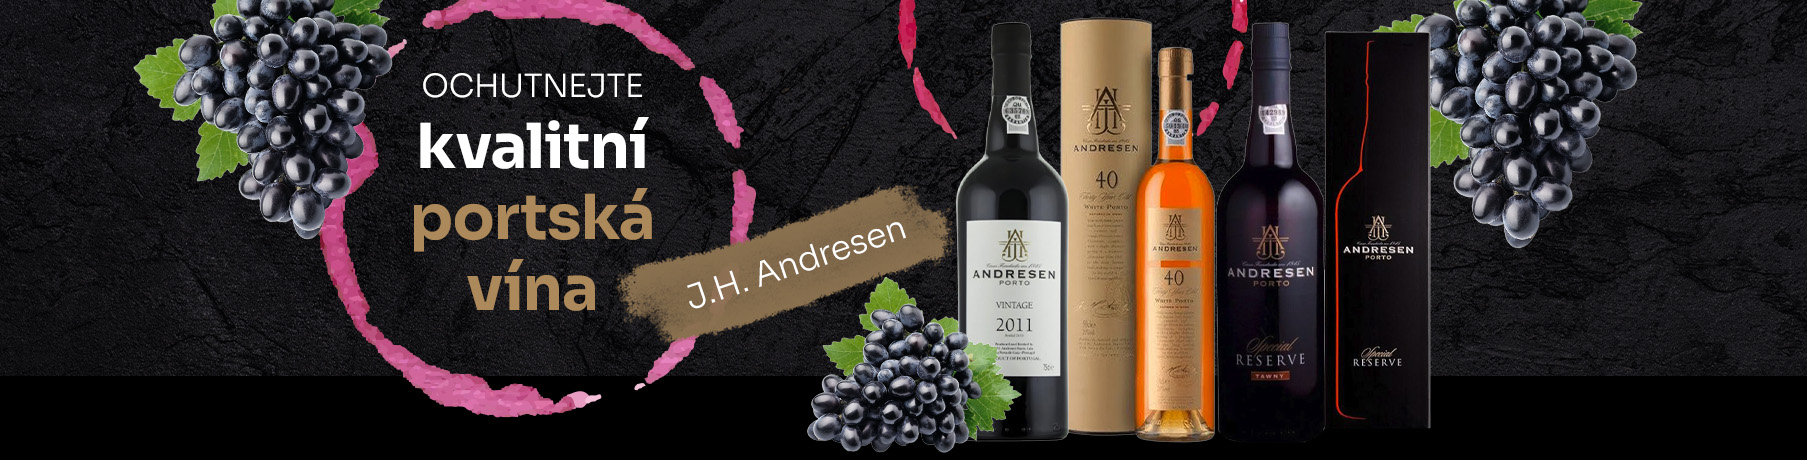 Kvalitní portská vína J.H. Andresen